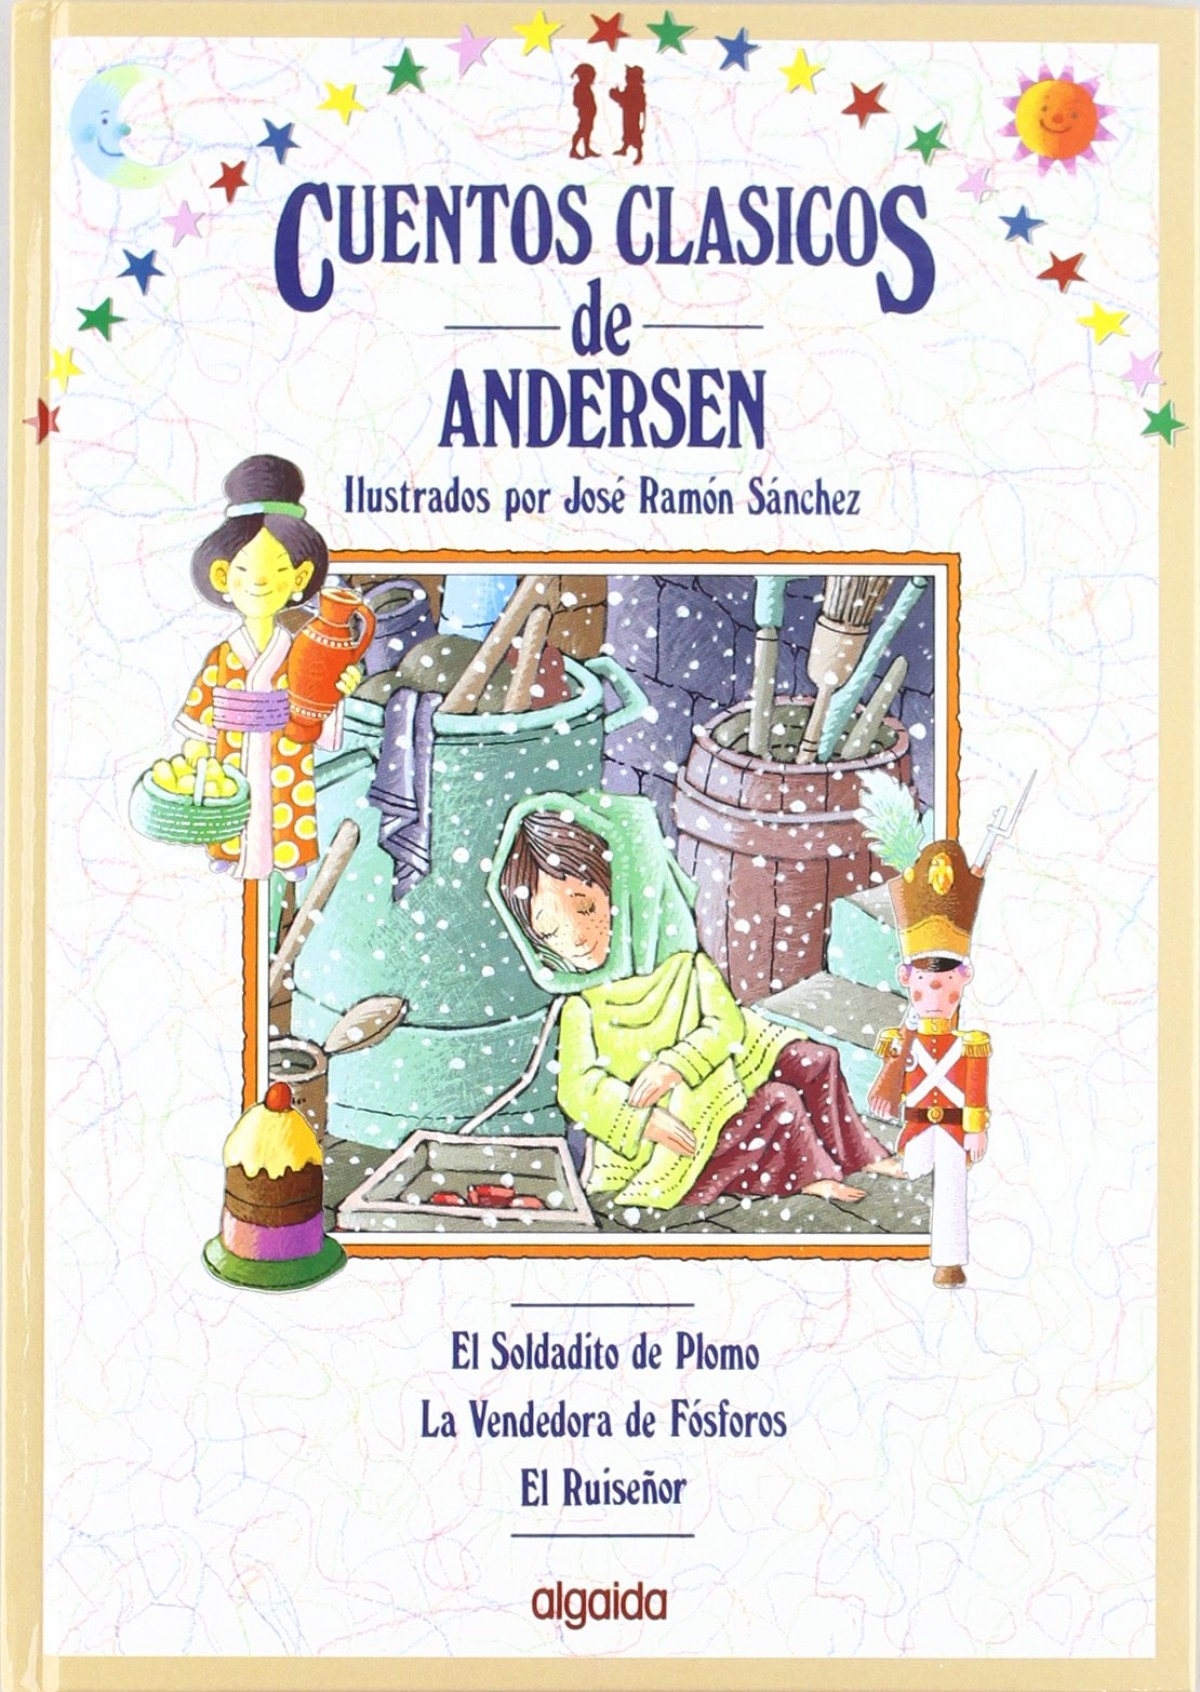 Cuentos clásicos de Andersen vol. III - Andersen, Hans Christian                          Sánchez Sanz, José Ramón (ilust.)